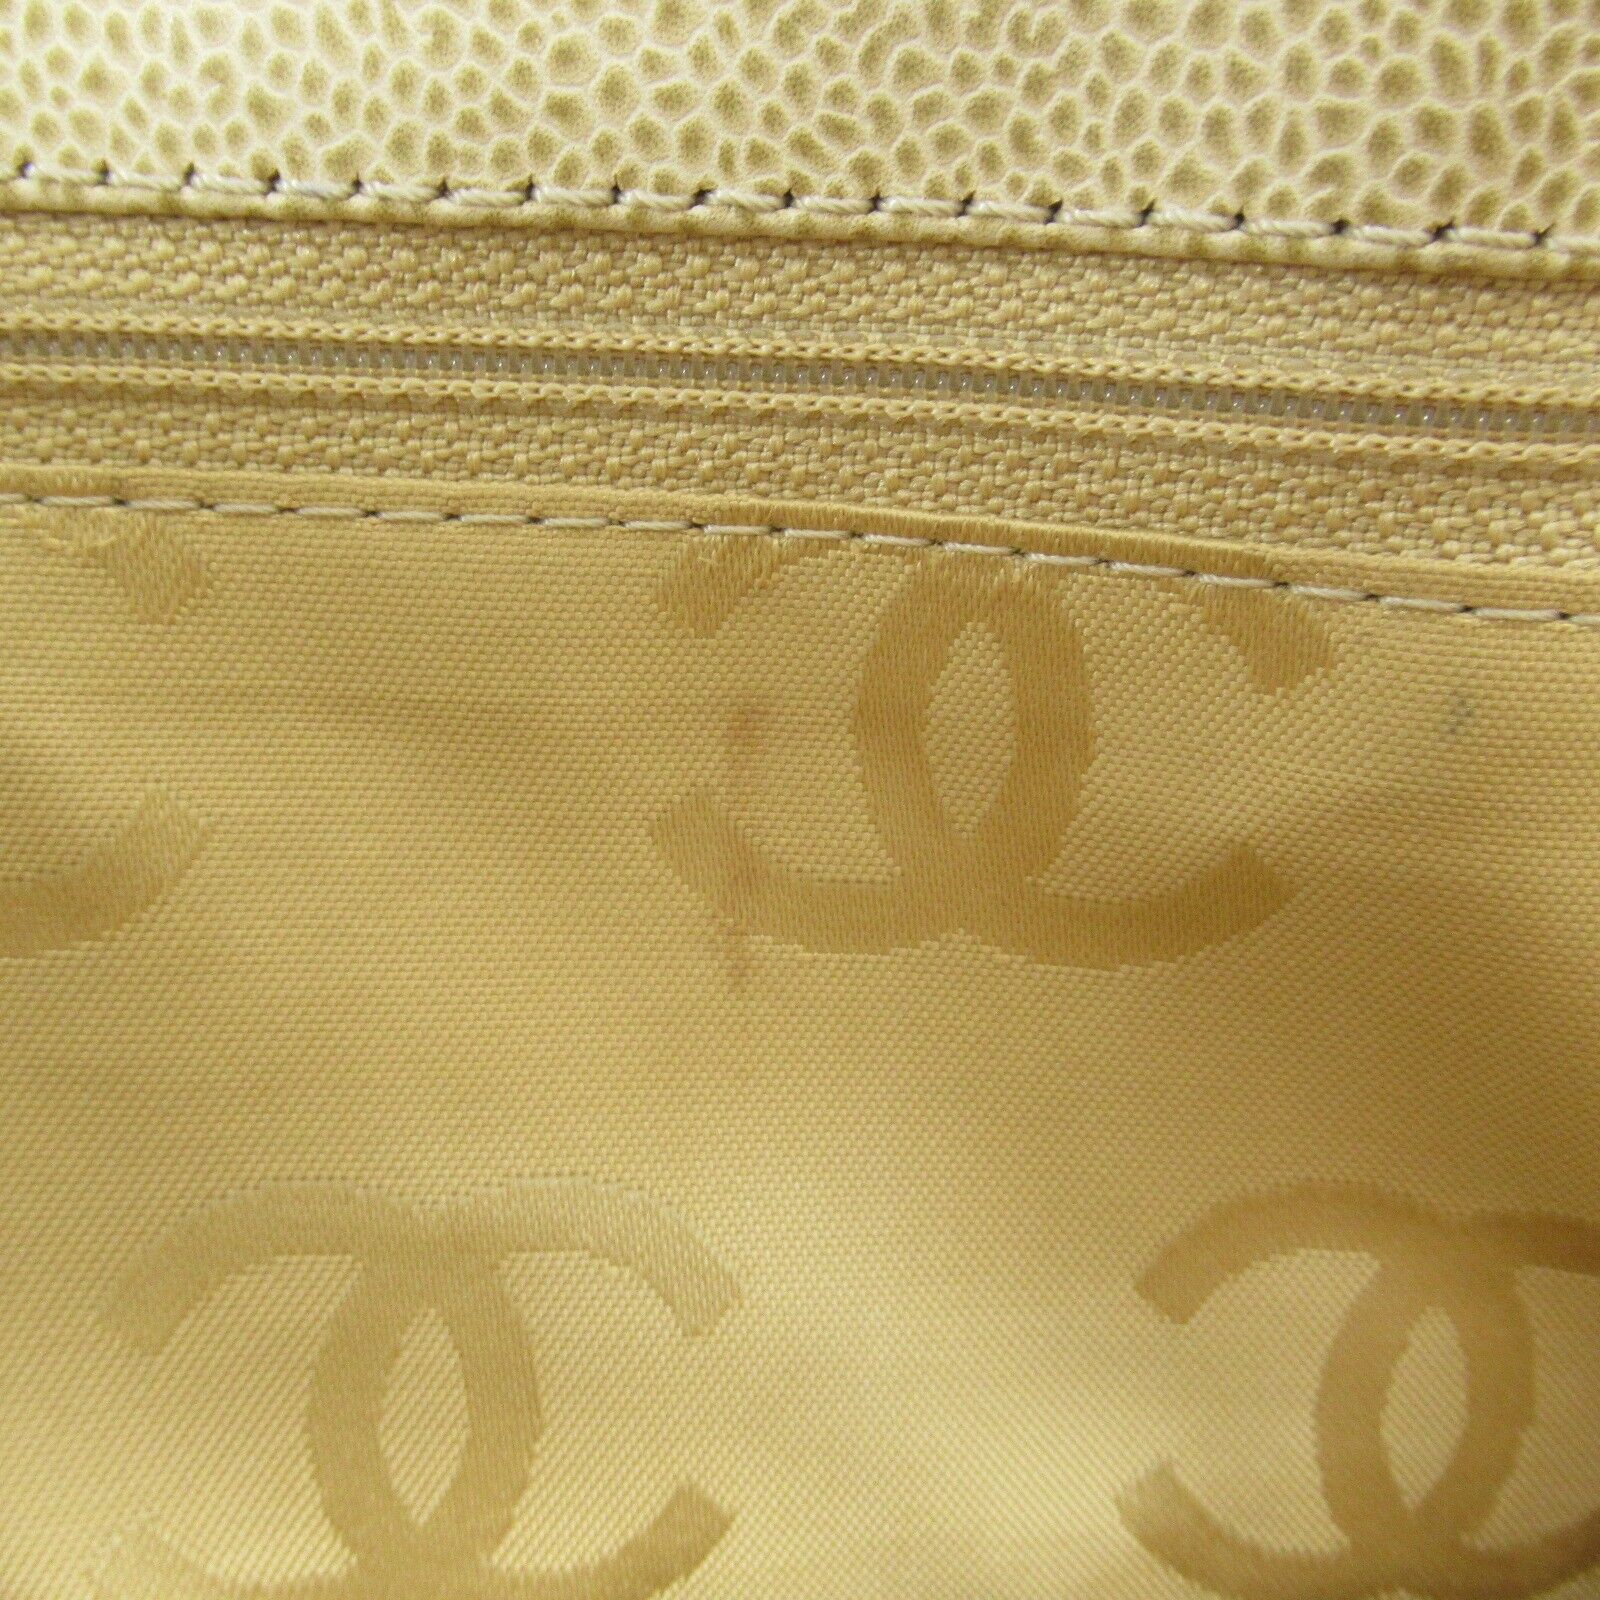 CHANEL Tote Bag Caviar leather Beige cream Used Women CC COCO